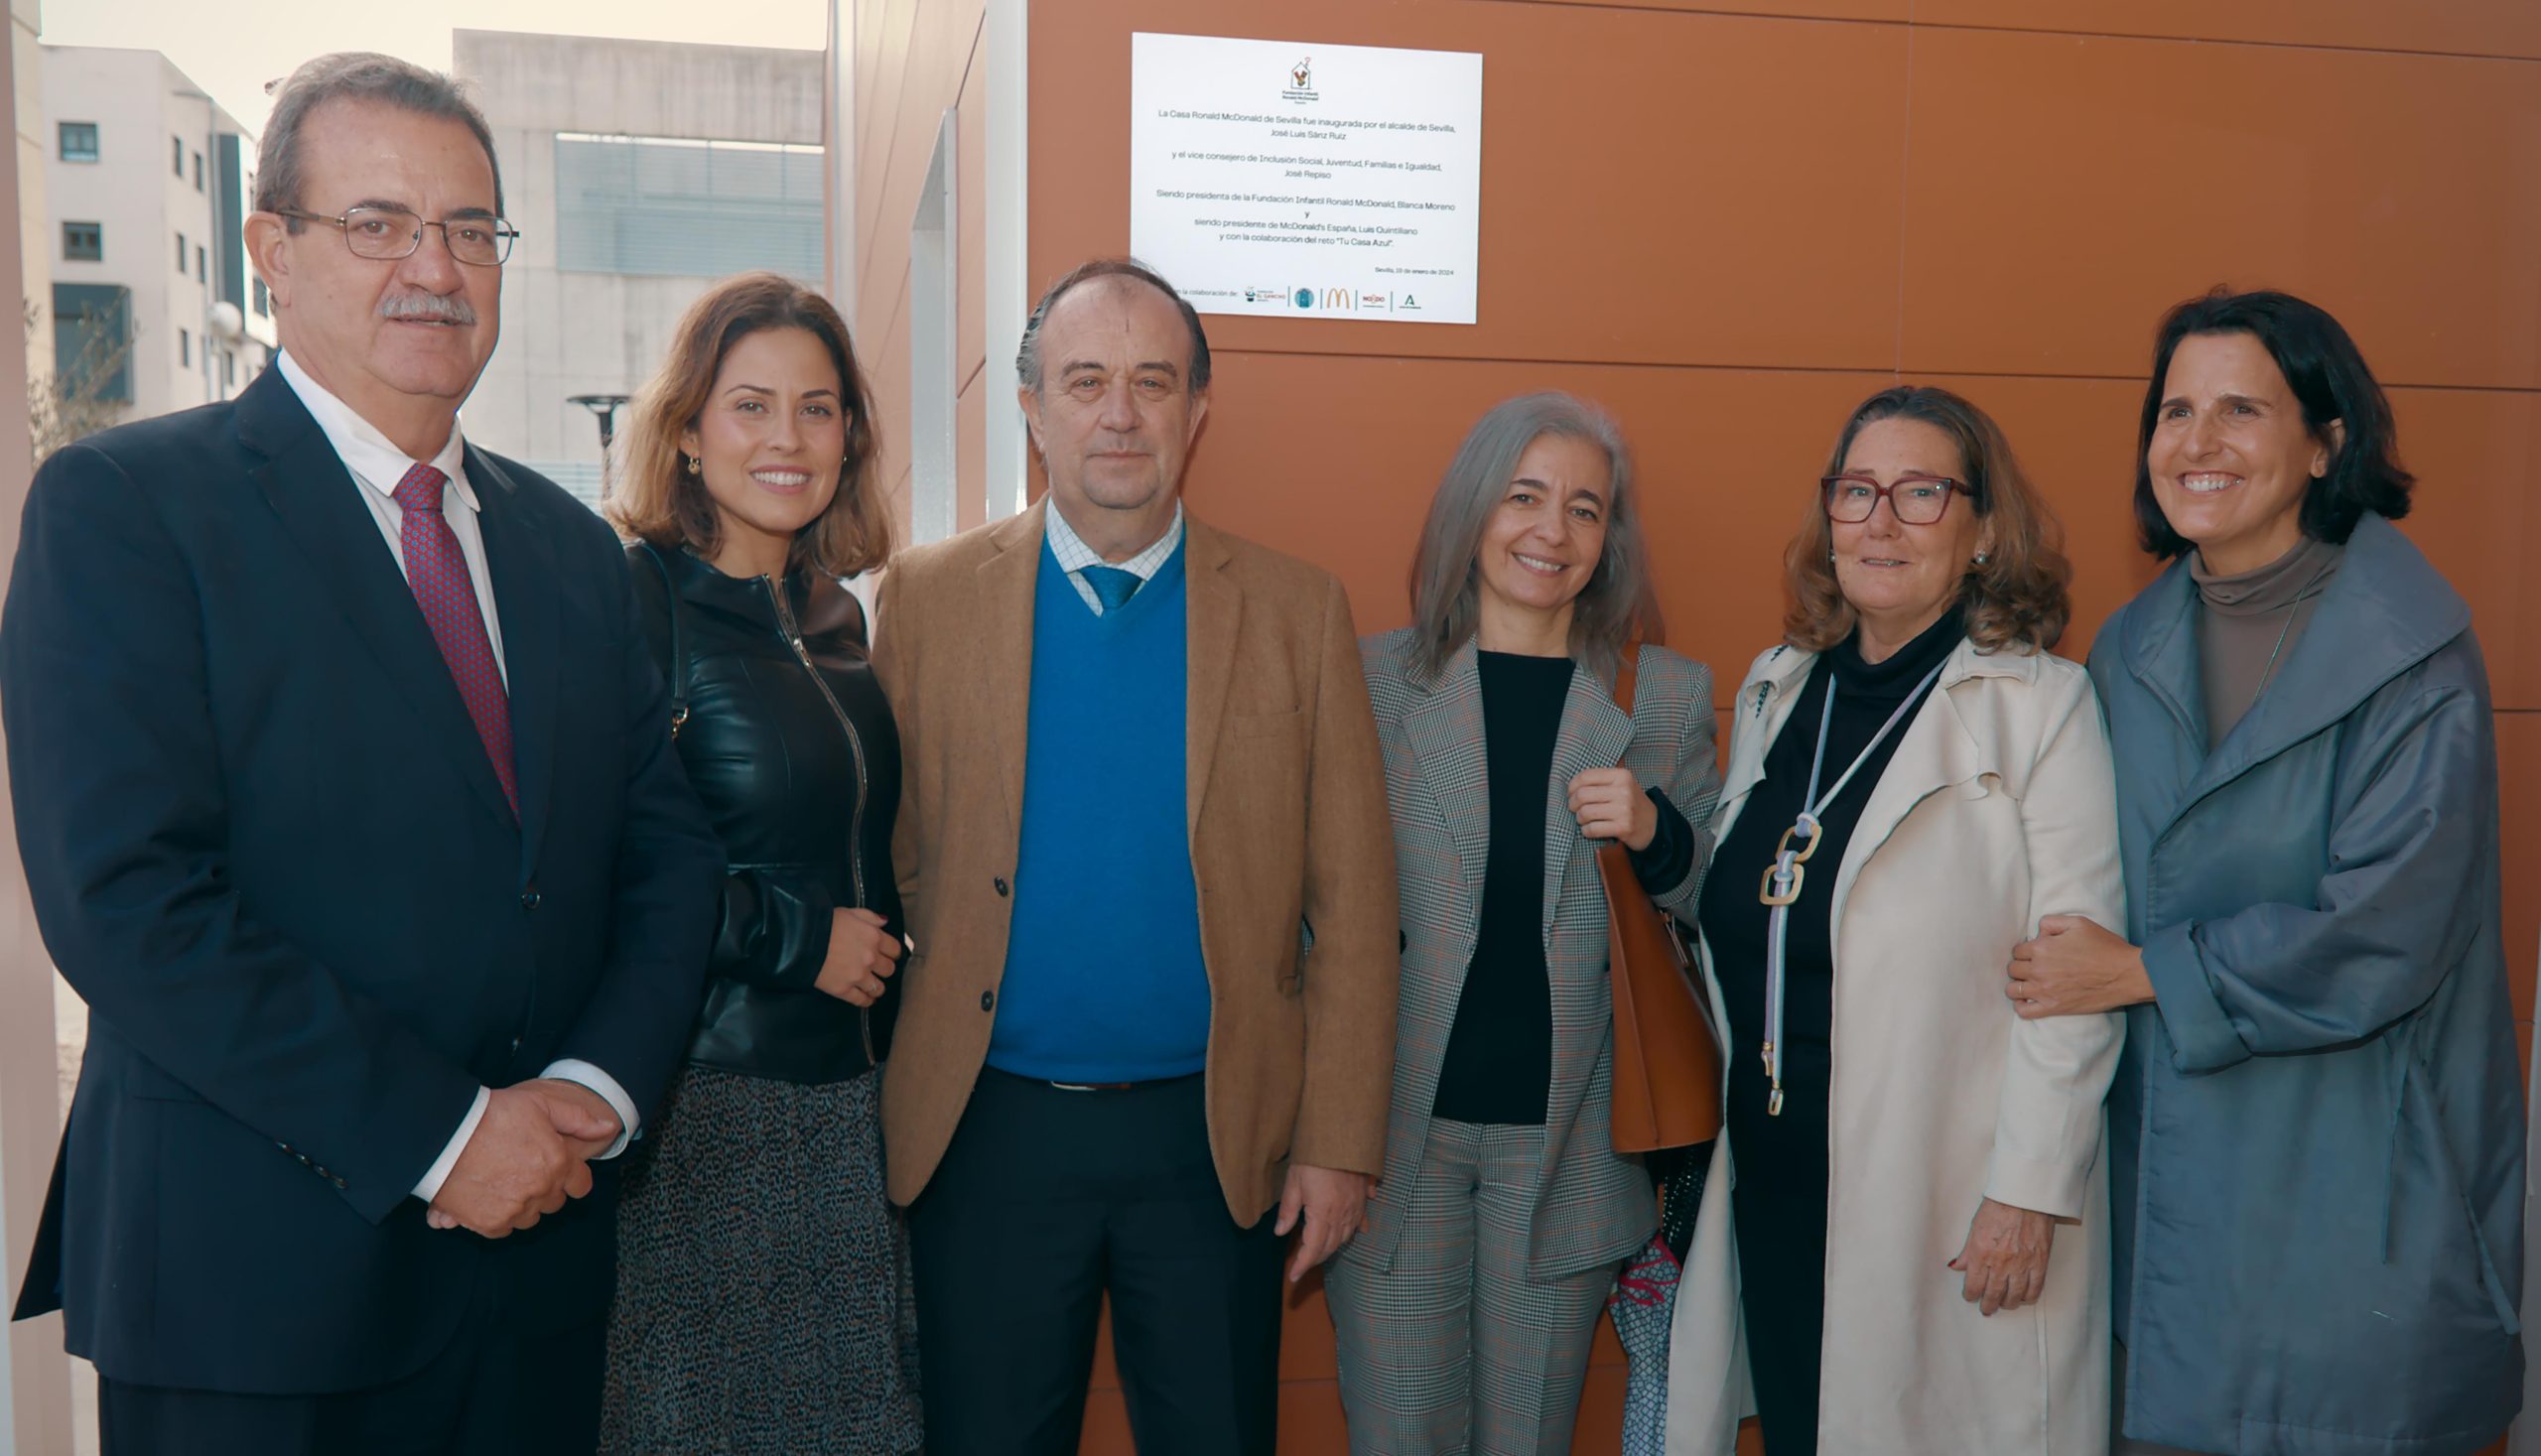 Inauguración Casa Ronald MC Donald en Sevilla - Gerente Hospital Virgen del Rocío - Directora General Asistencia Sanitaria - Delegada de Salud y Consumo